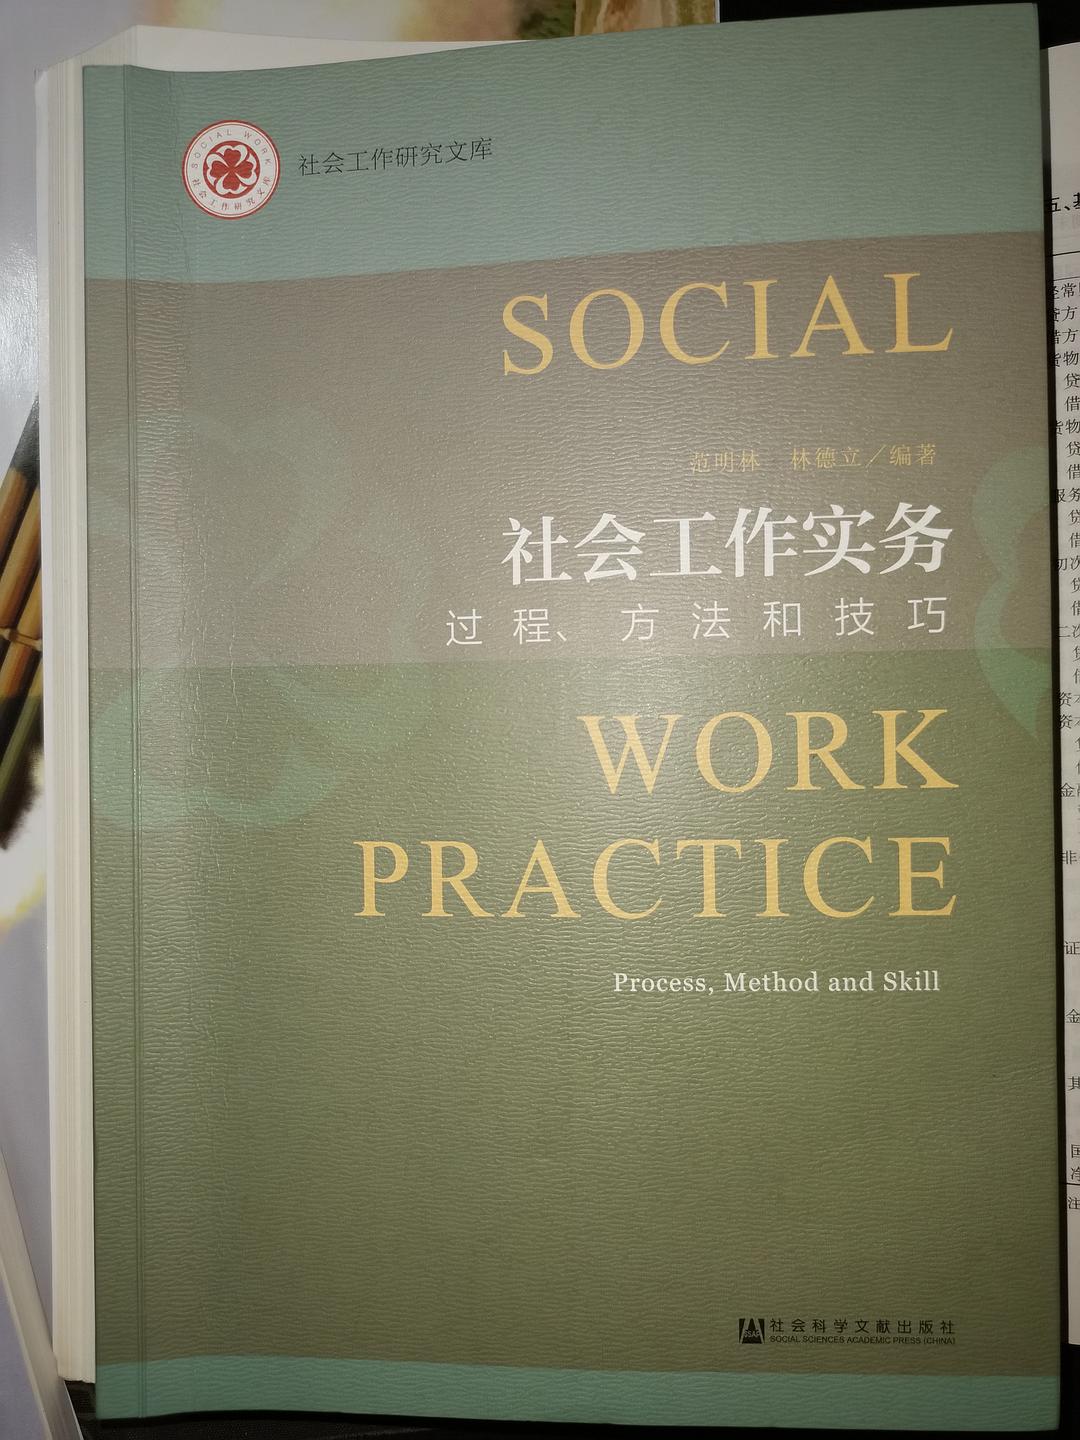 社会工作实务 过程、方法和技巧 process, method and skill